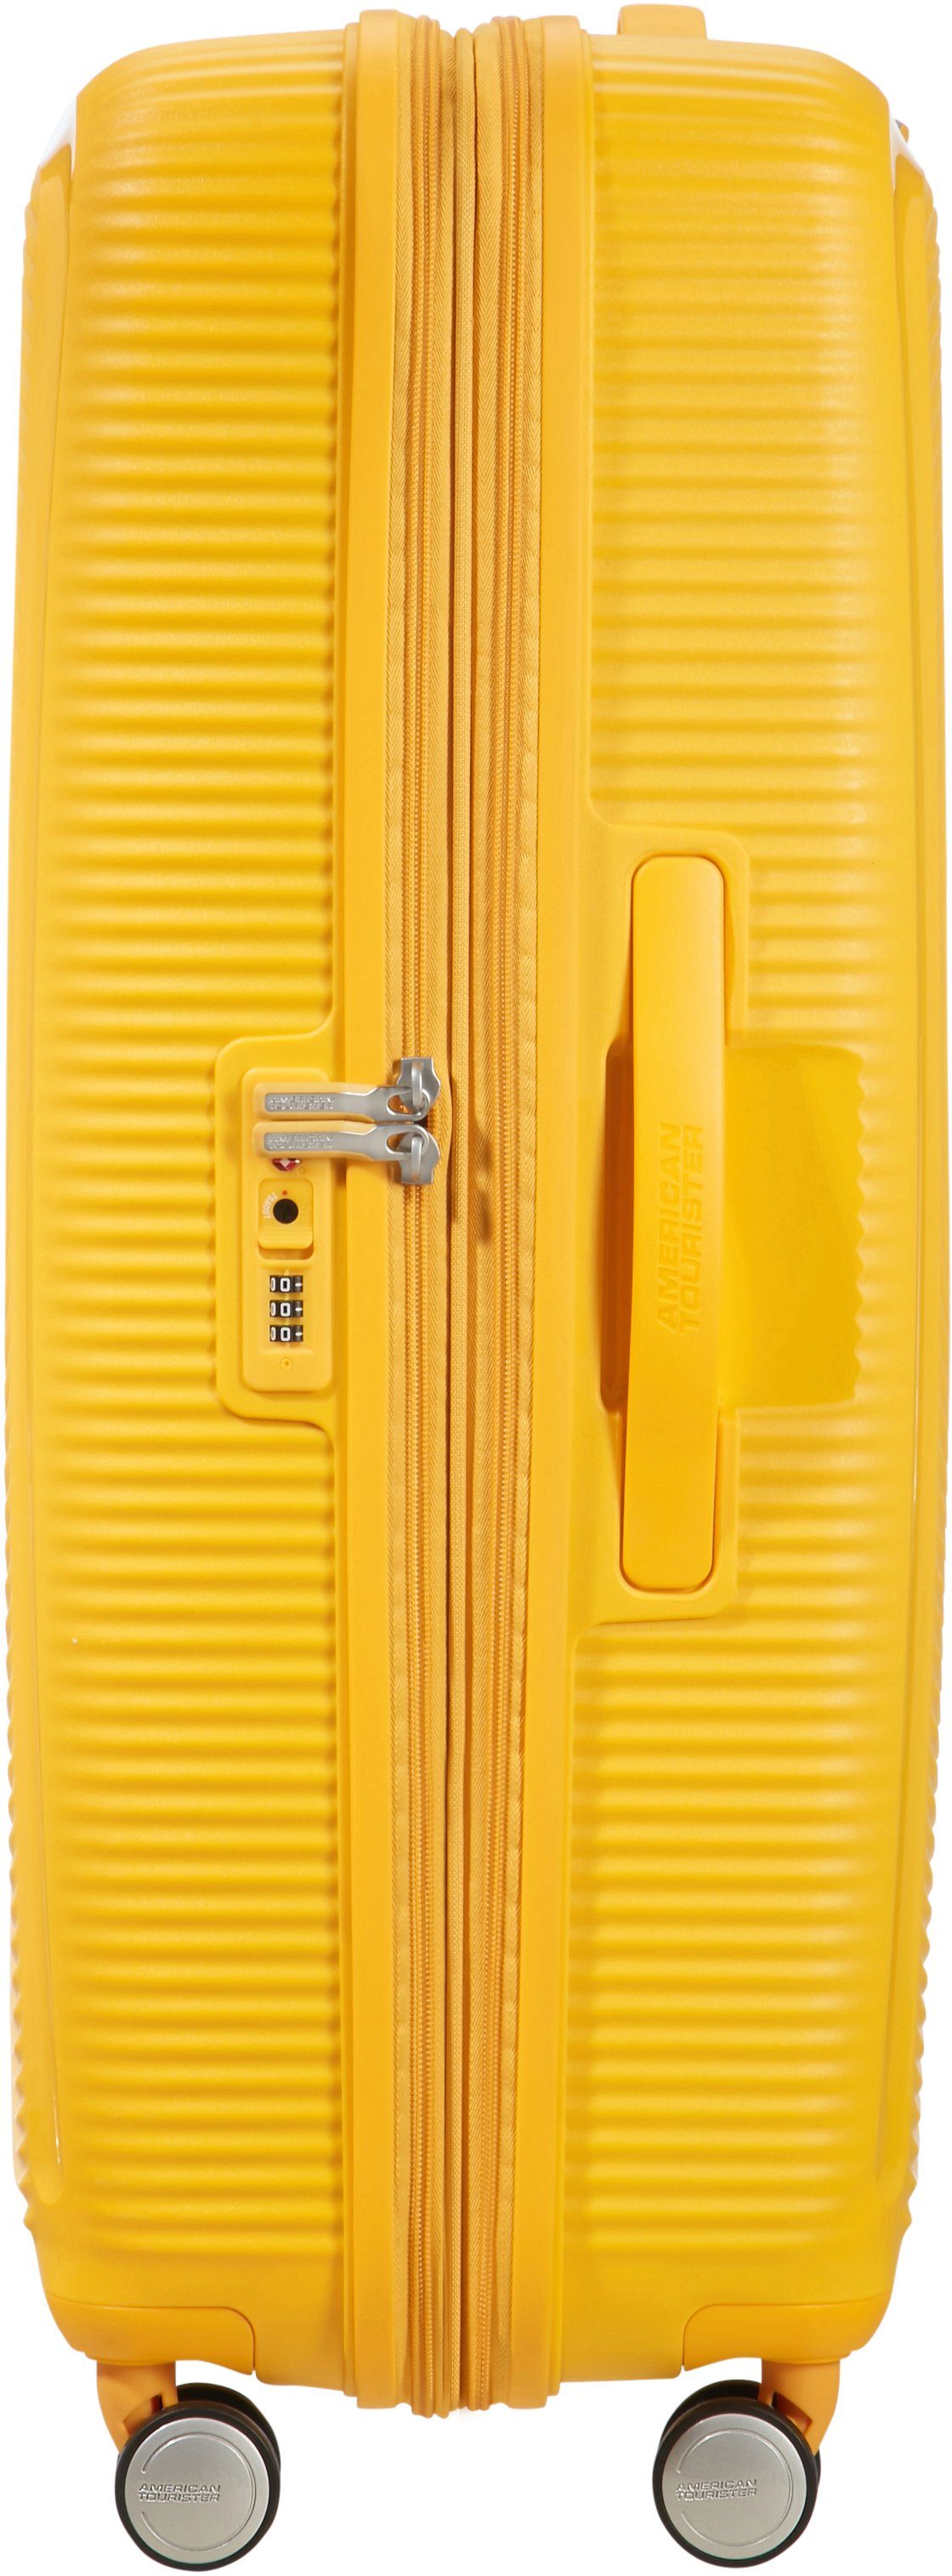 Golden 77 American Soundbox, Volumenerweiterung Rollen, Hartschalen-Trolley 4 Tourister® cm, Yellow mit